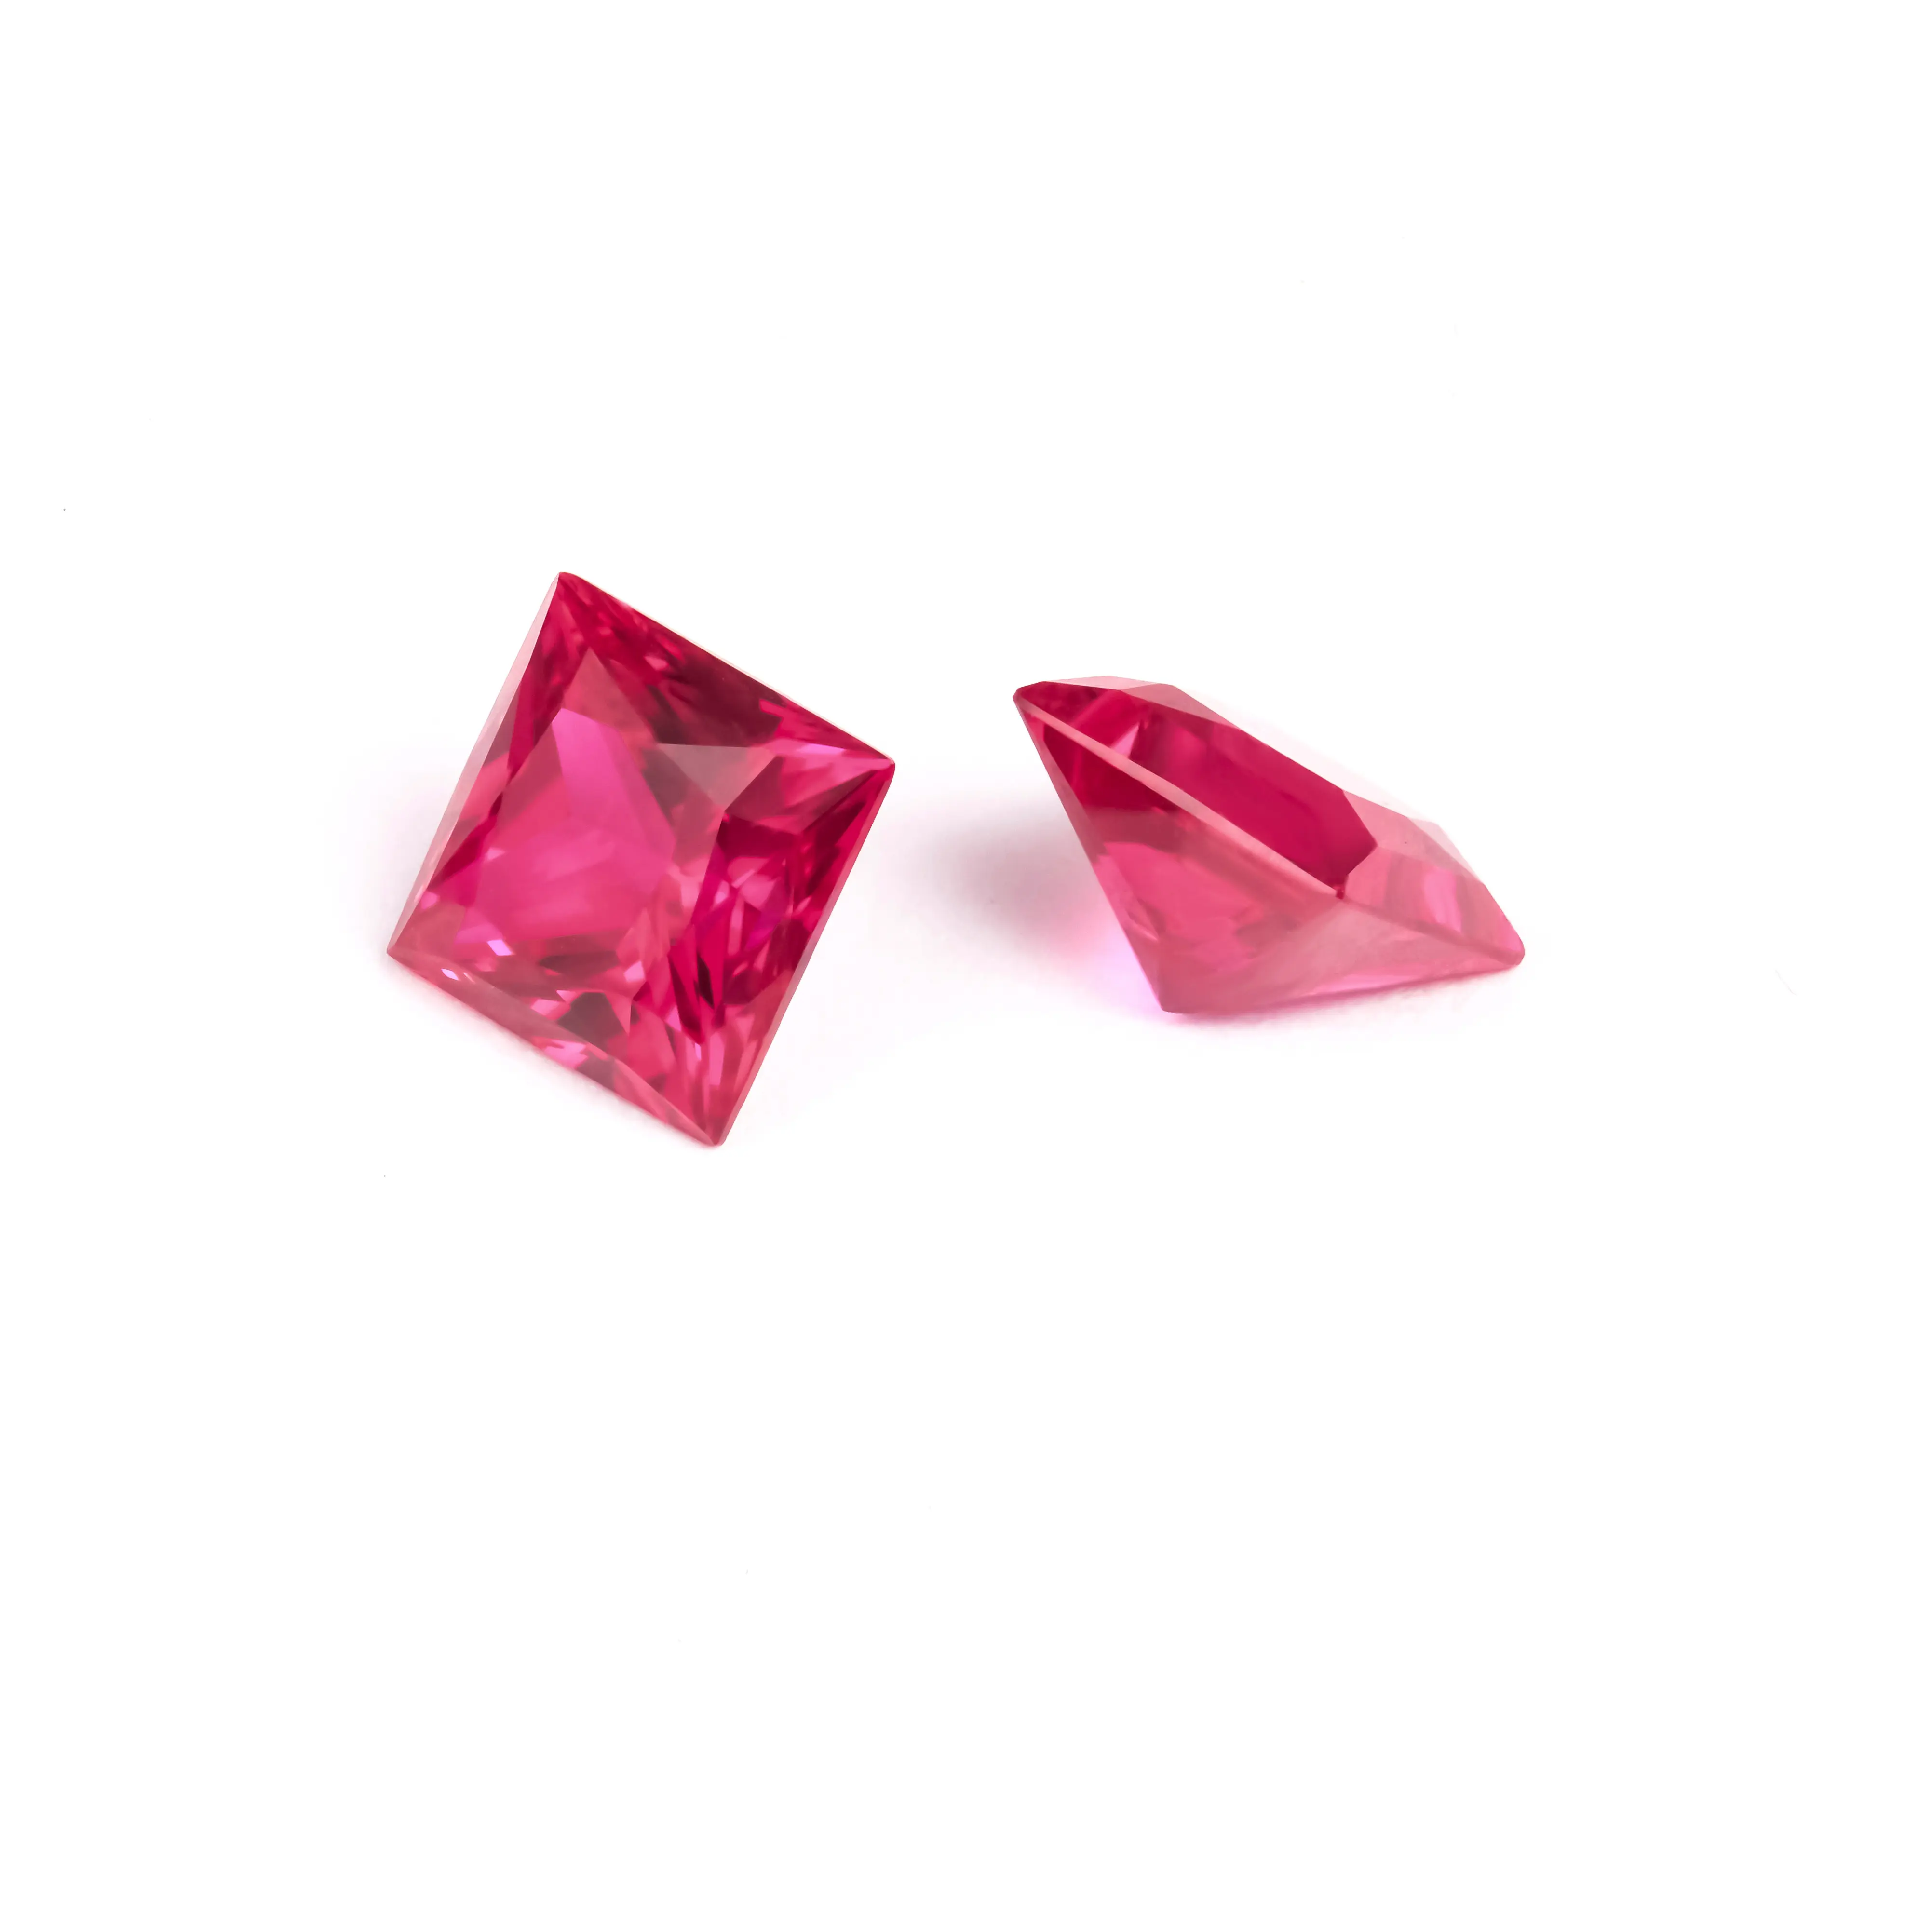 卸売独自の天然赤色VVS高品質プリンセスカットルビー珍しいマーチャントはユニークな実験室で成長した宝石を持っています